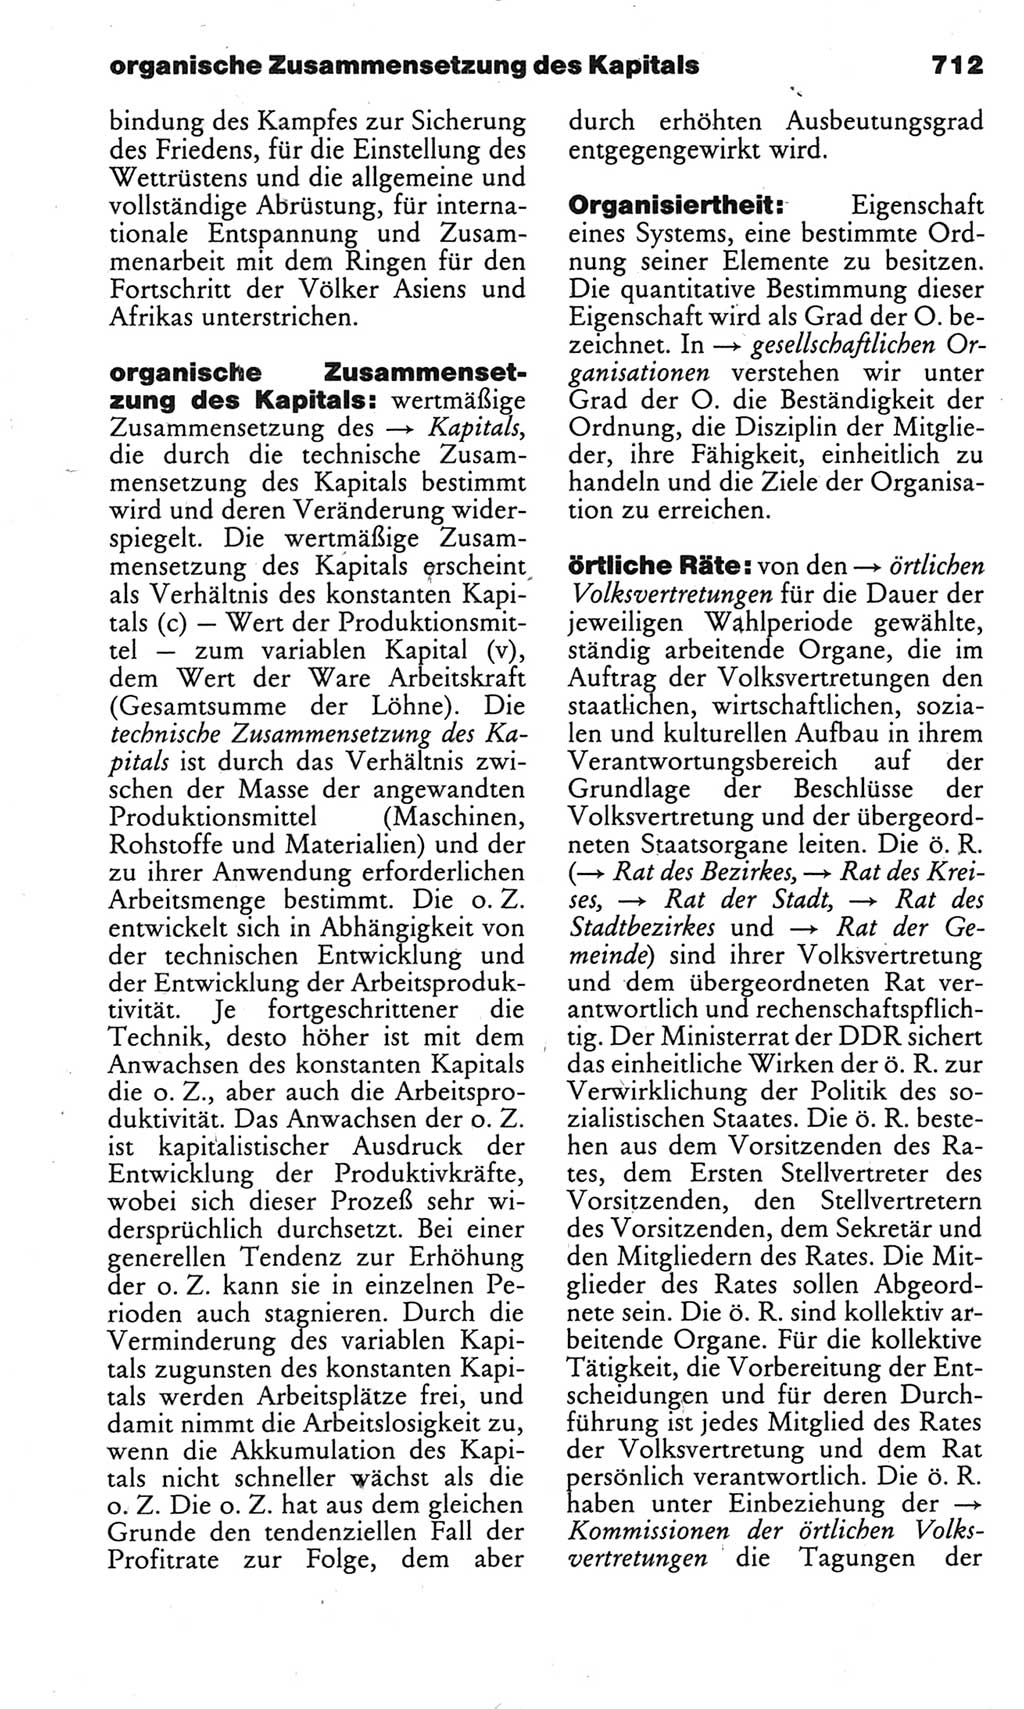 Kleines politisches Wörterbuch [Deutsche Demokratische Republik (DDR)] 1983, Seite 712 (Kl. pol. Wb. DDR 1983, S. 712)